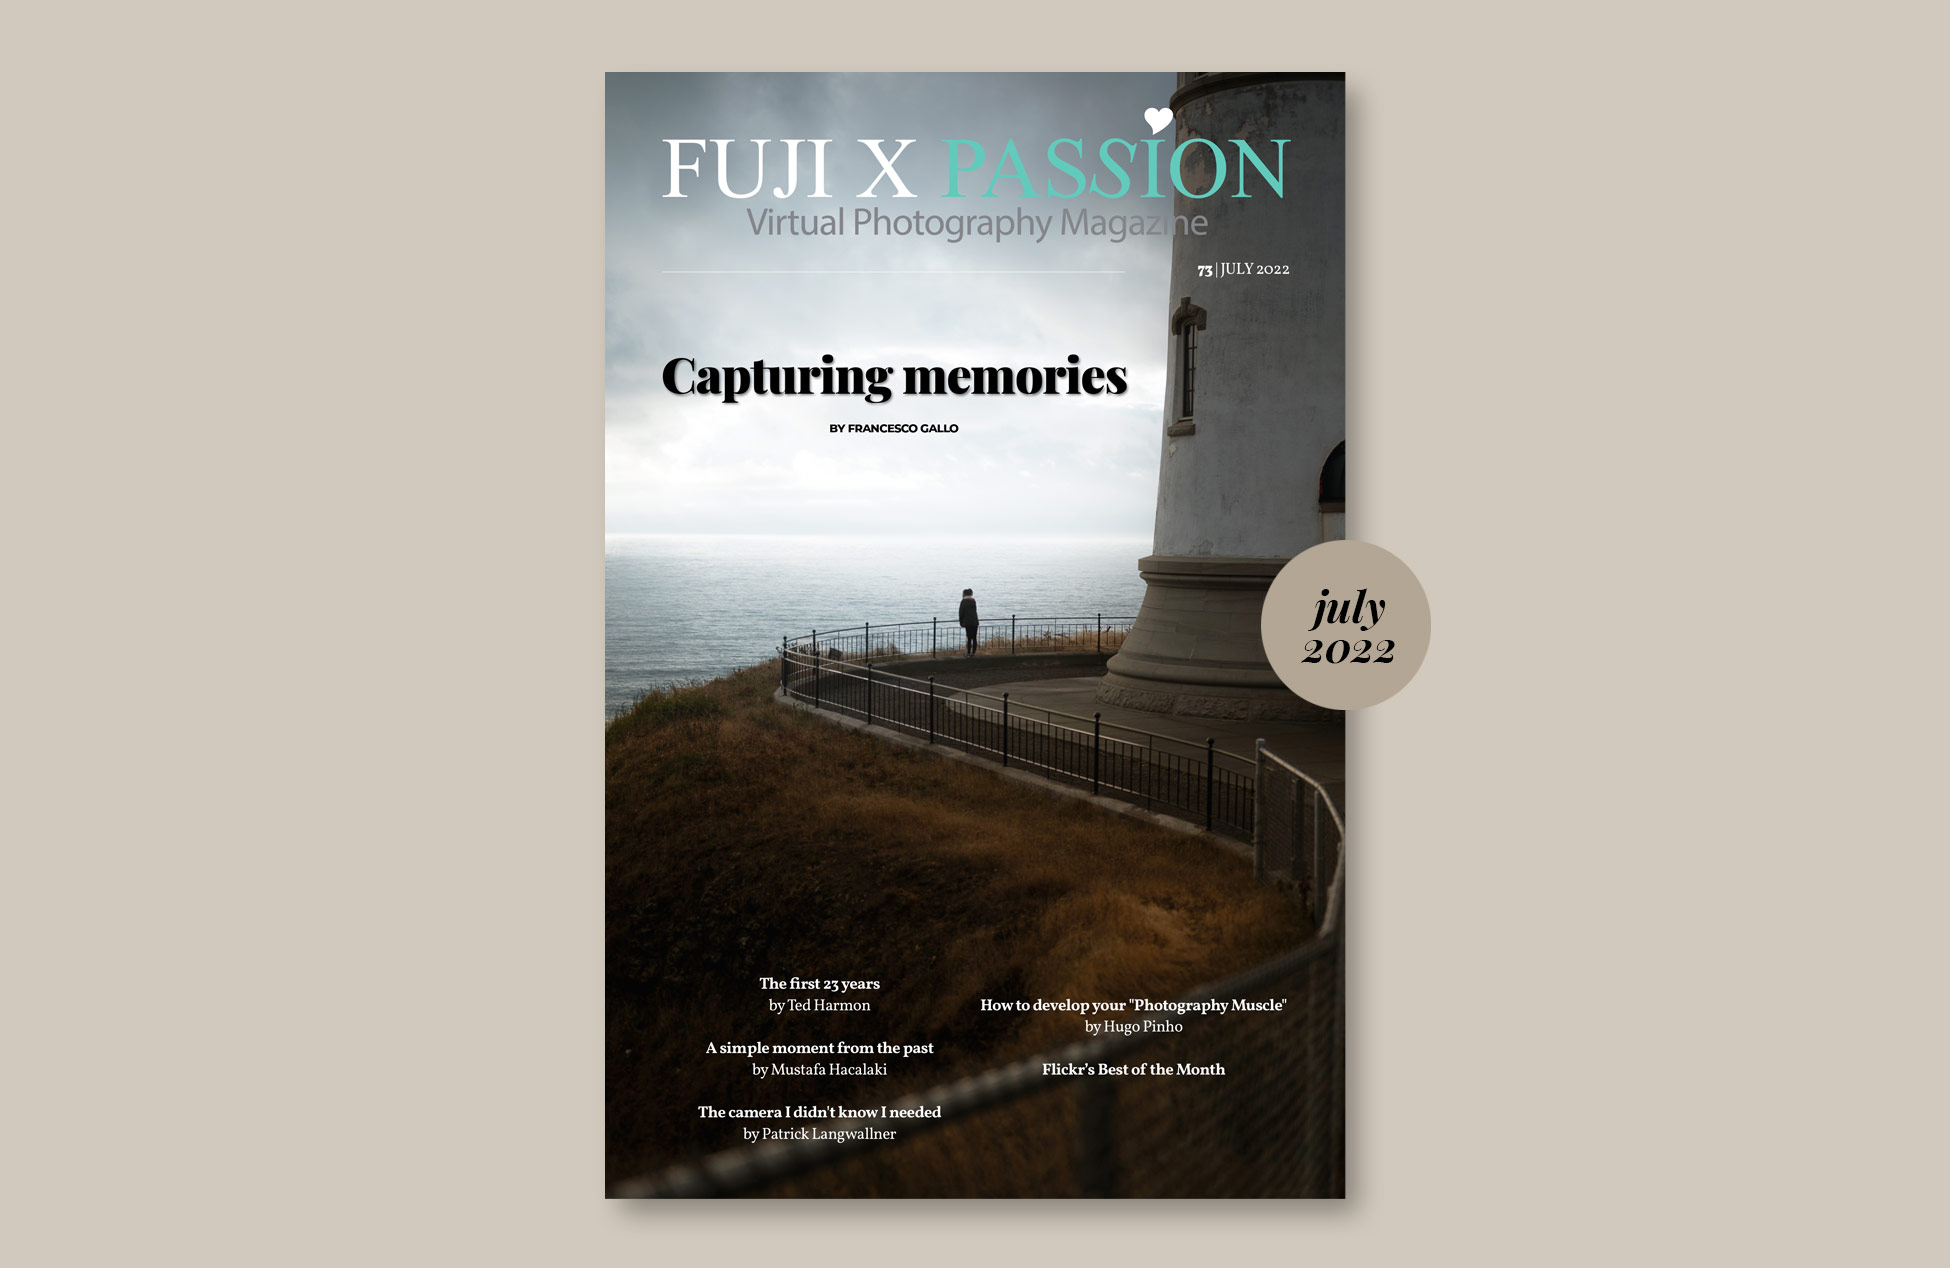 Fuji X Passion Photography Magazine – July 2022